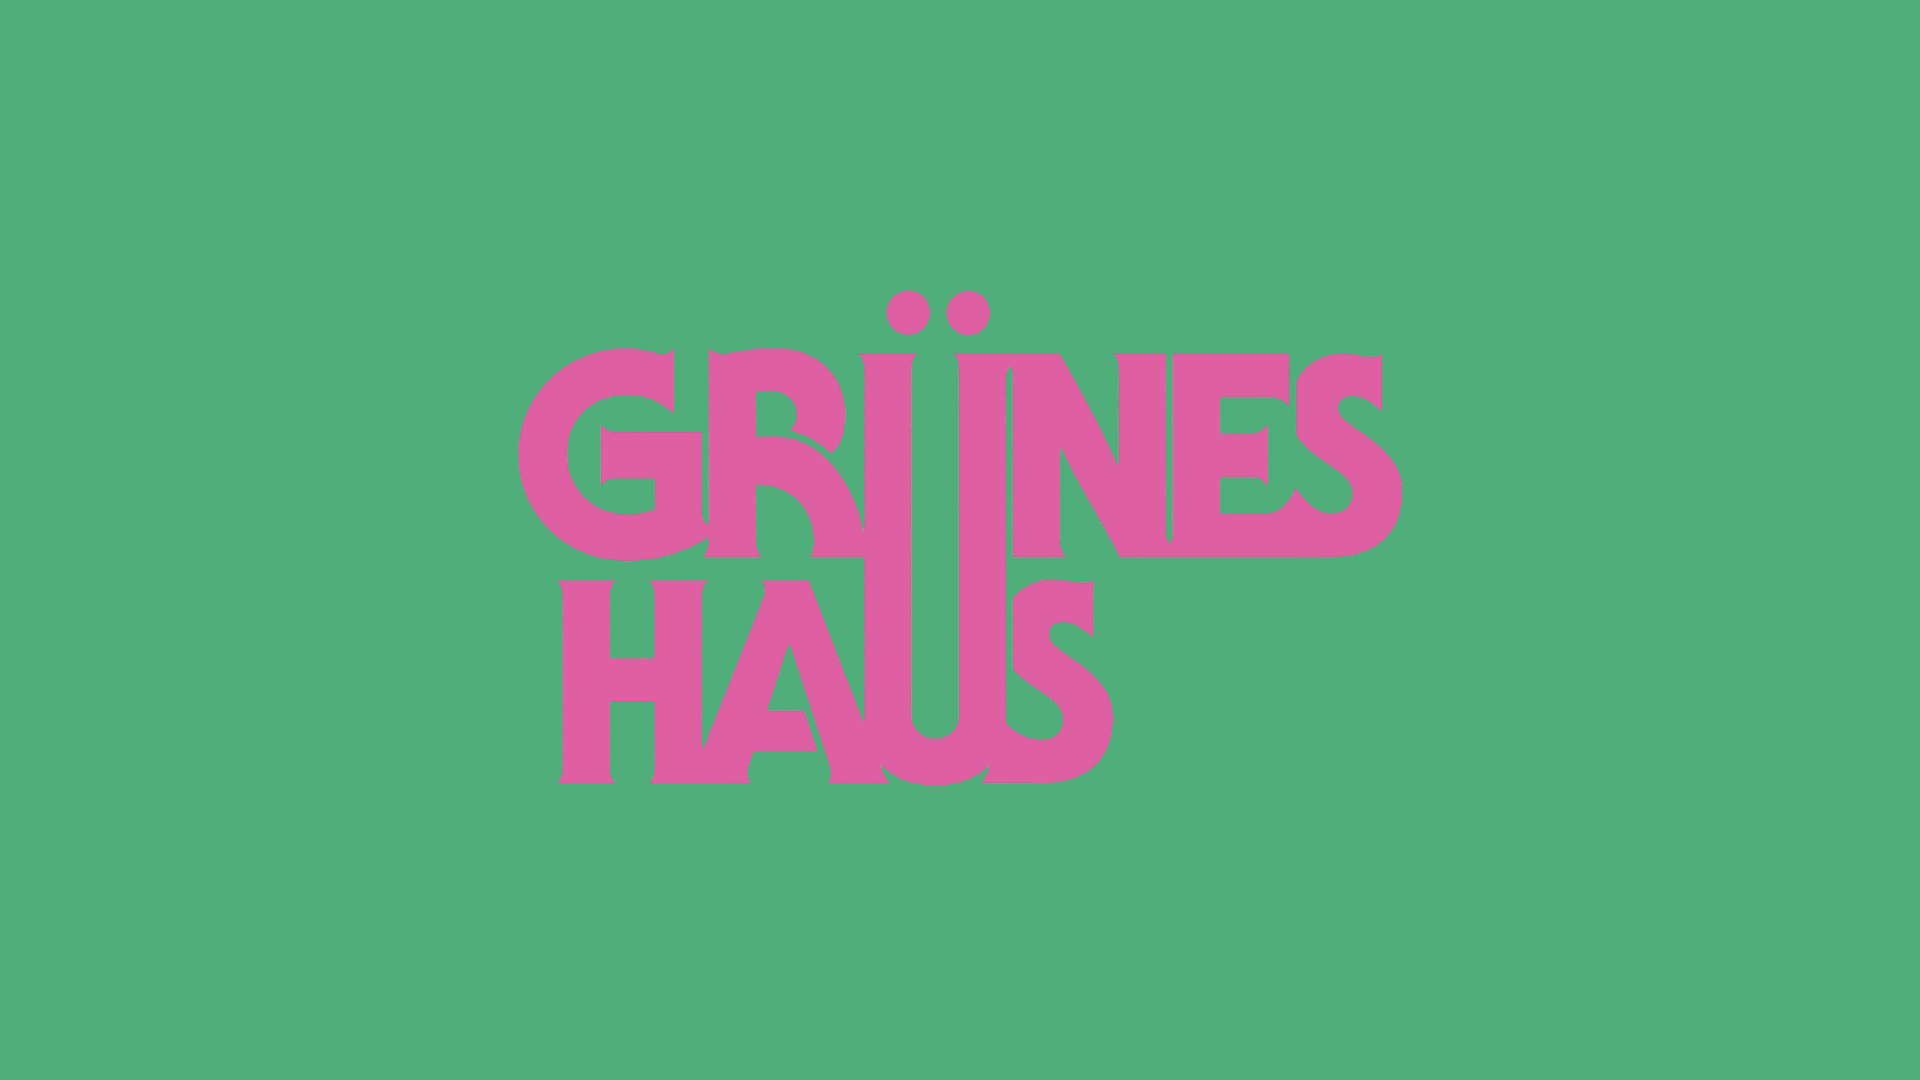 Grünes Haus Logotype in Motion